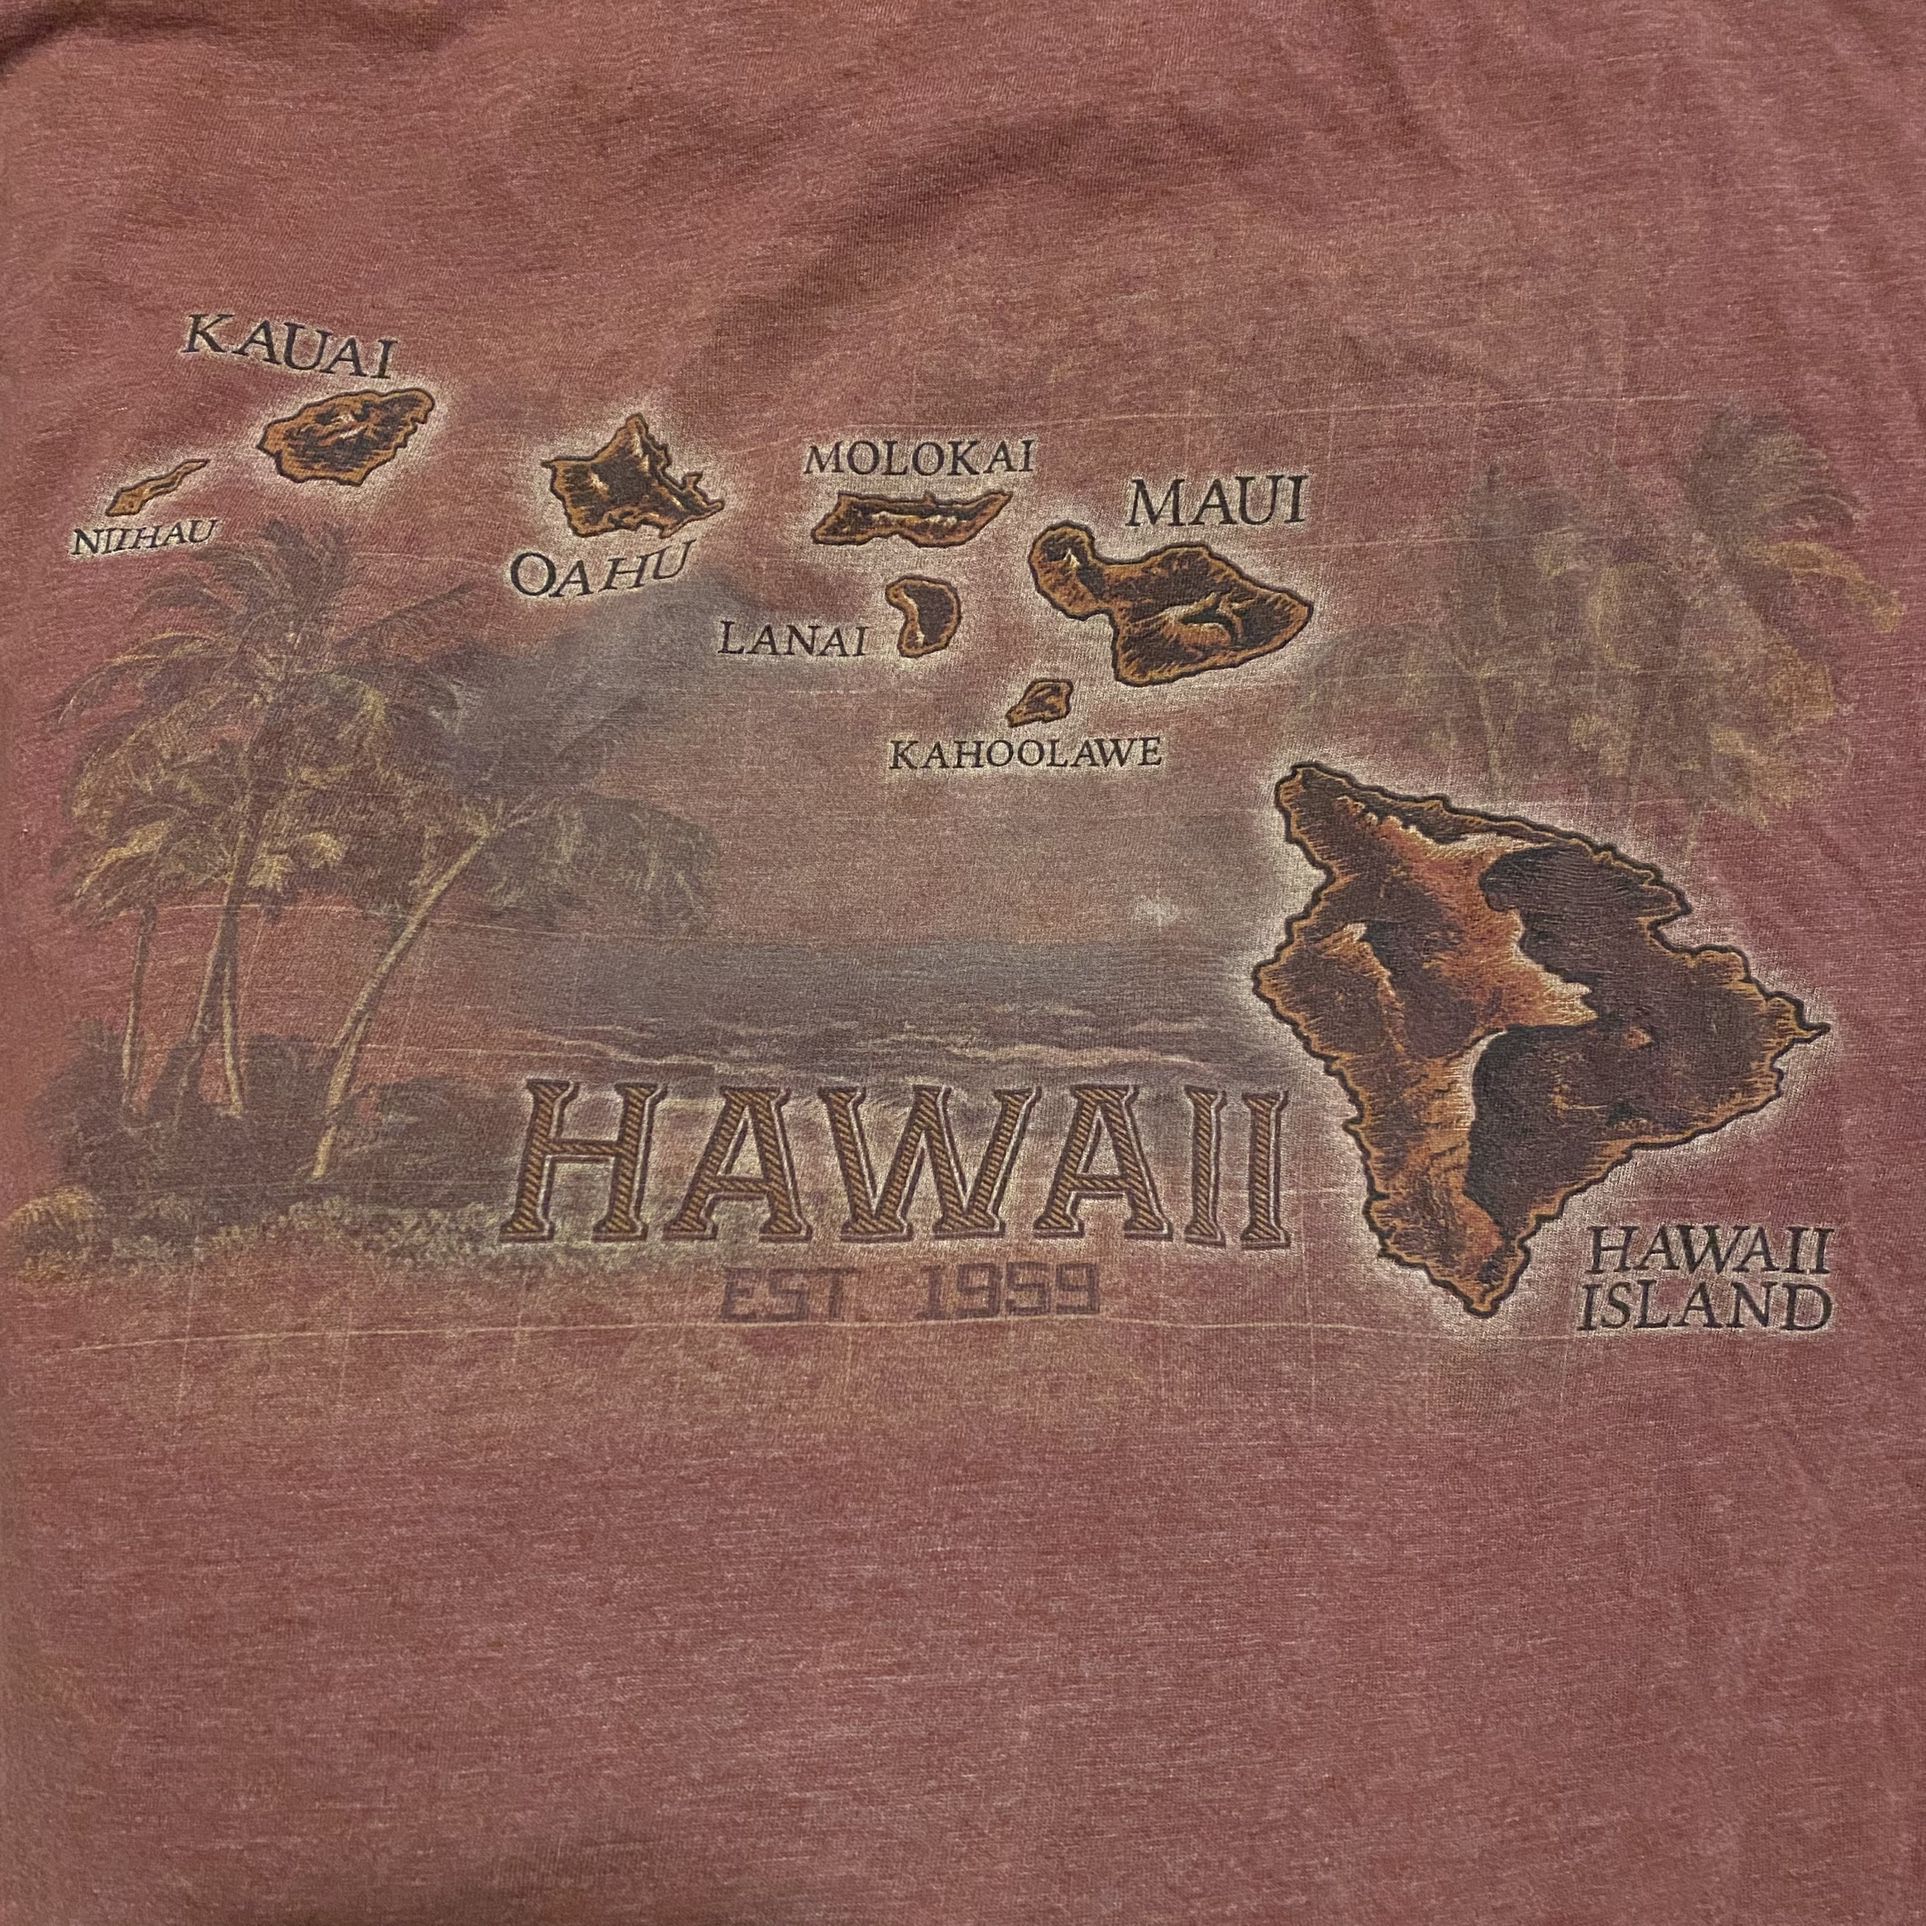 Hawaii Tee 